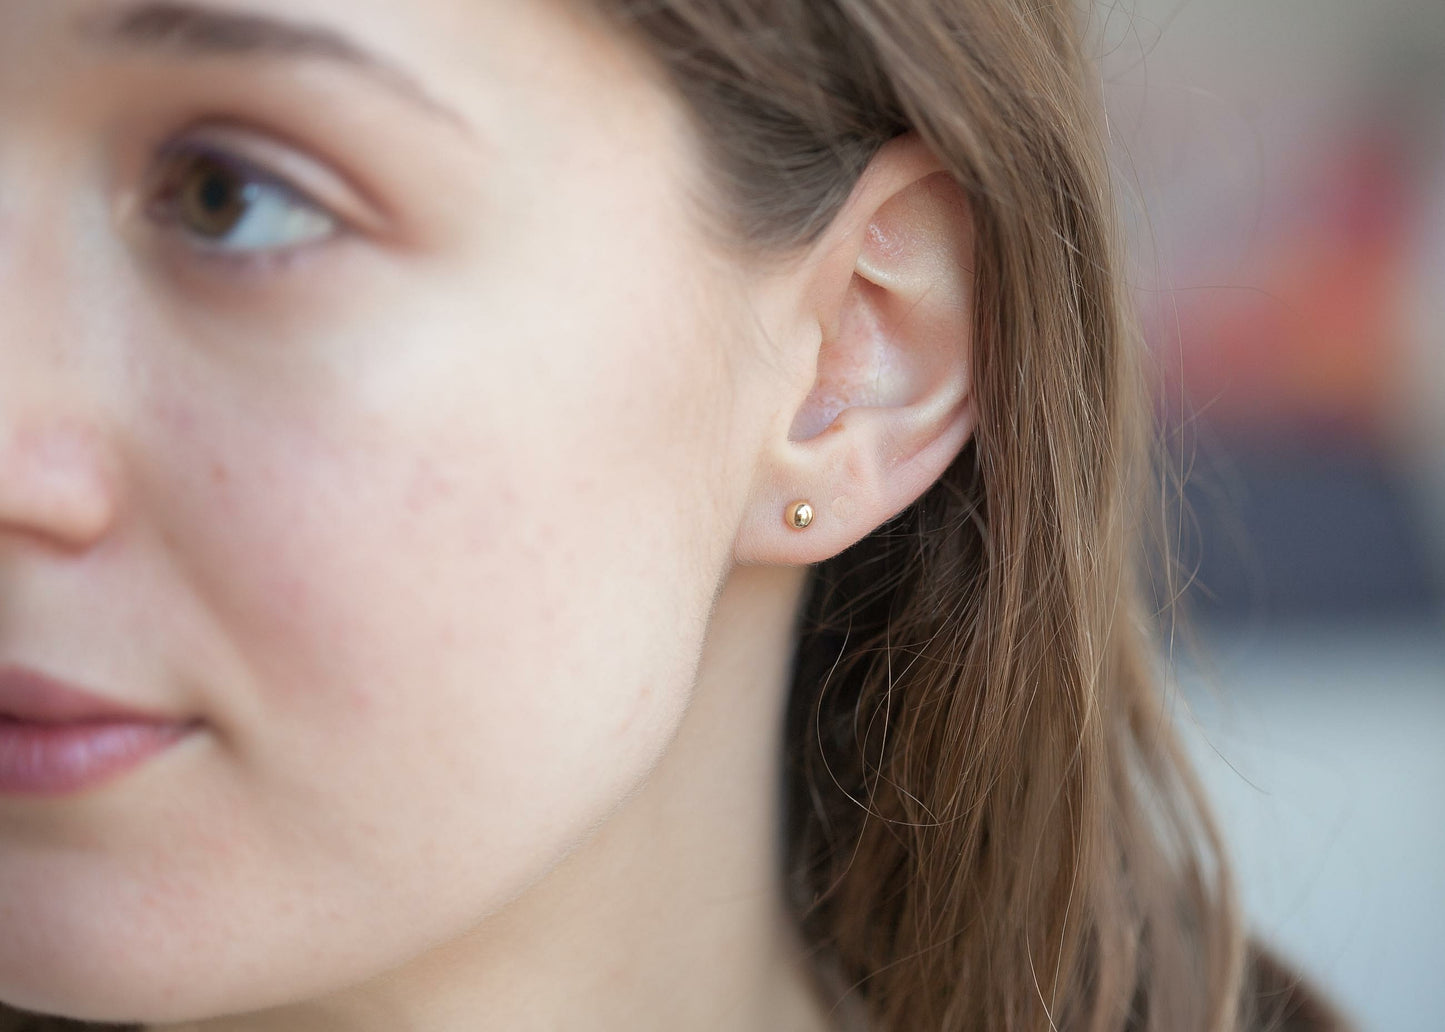 Puristische Ohrstecker Kugel 4mm Vergoldet - Ohrringe für Damen